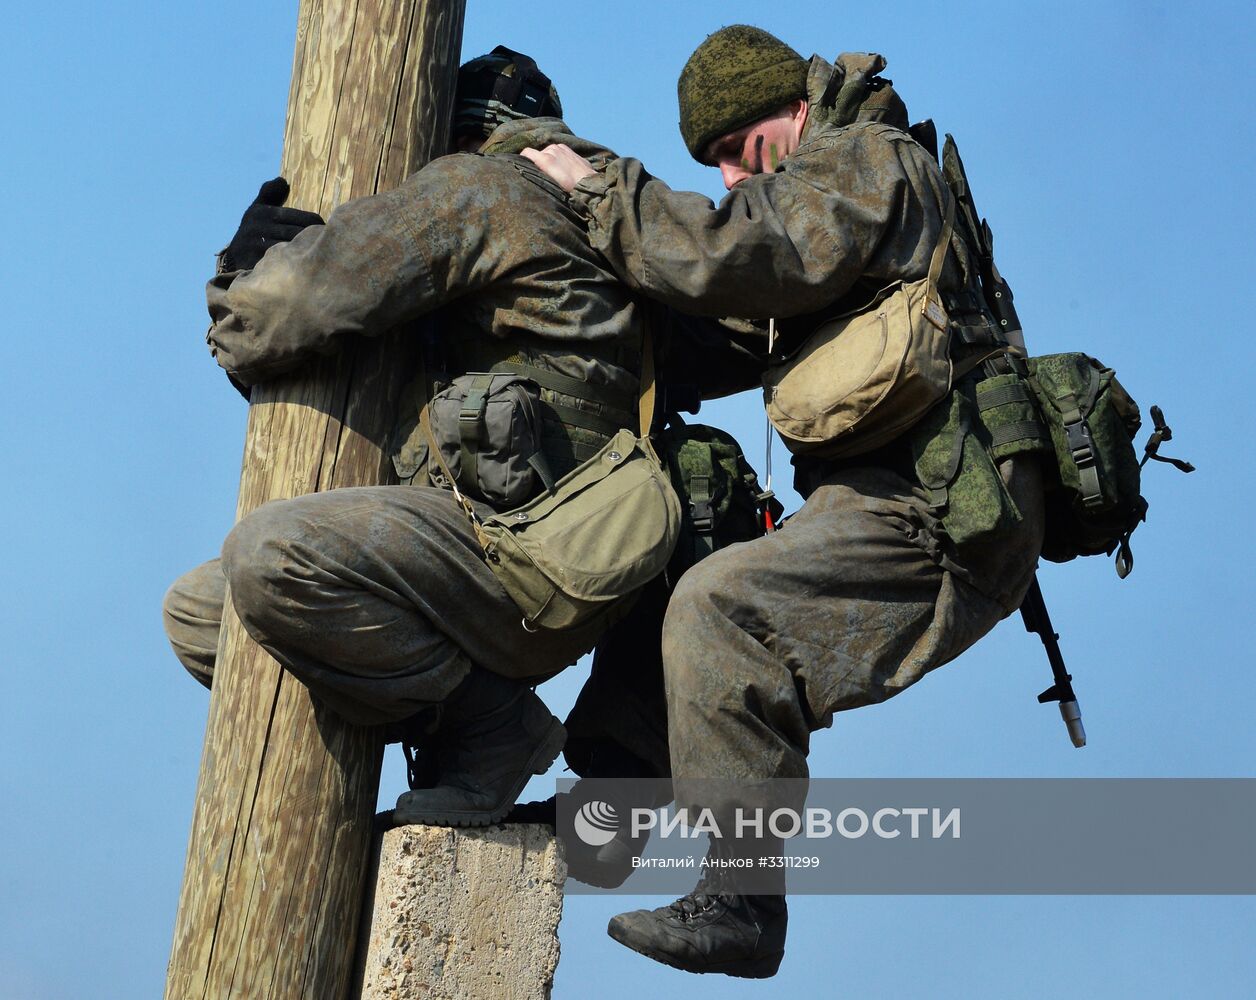 Соревнования "Отличники войсковой разведки" в Приморье